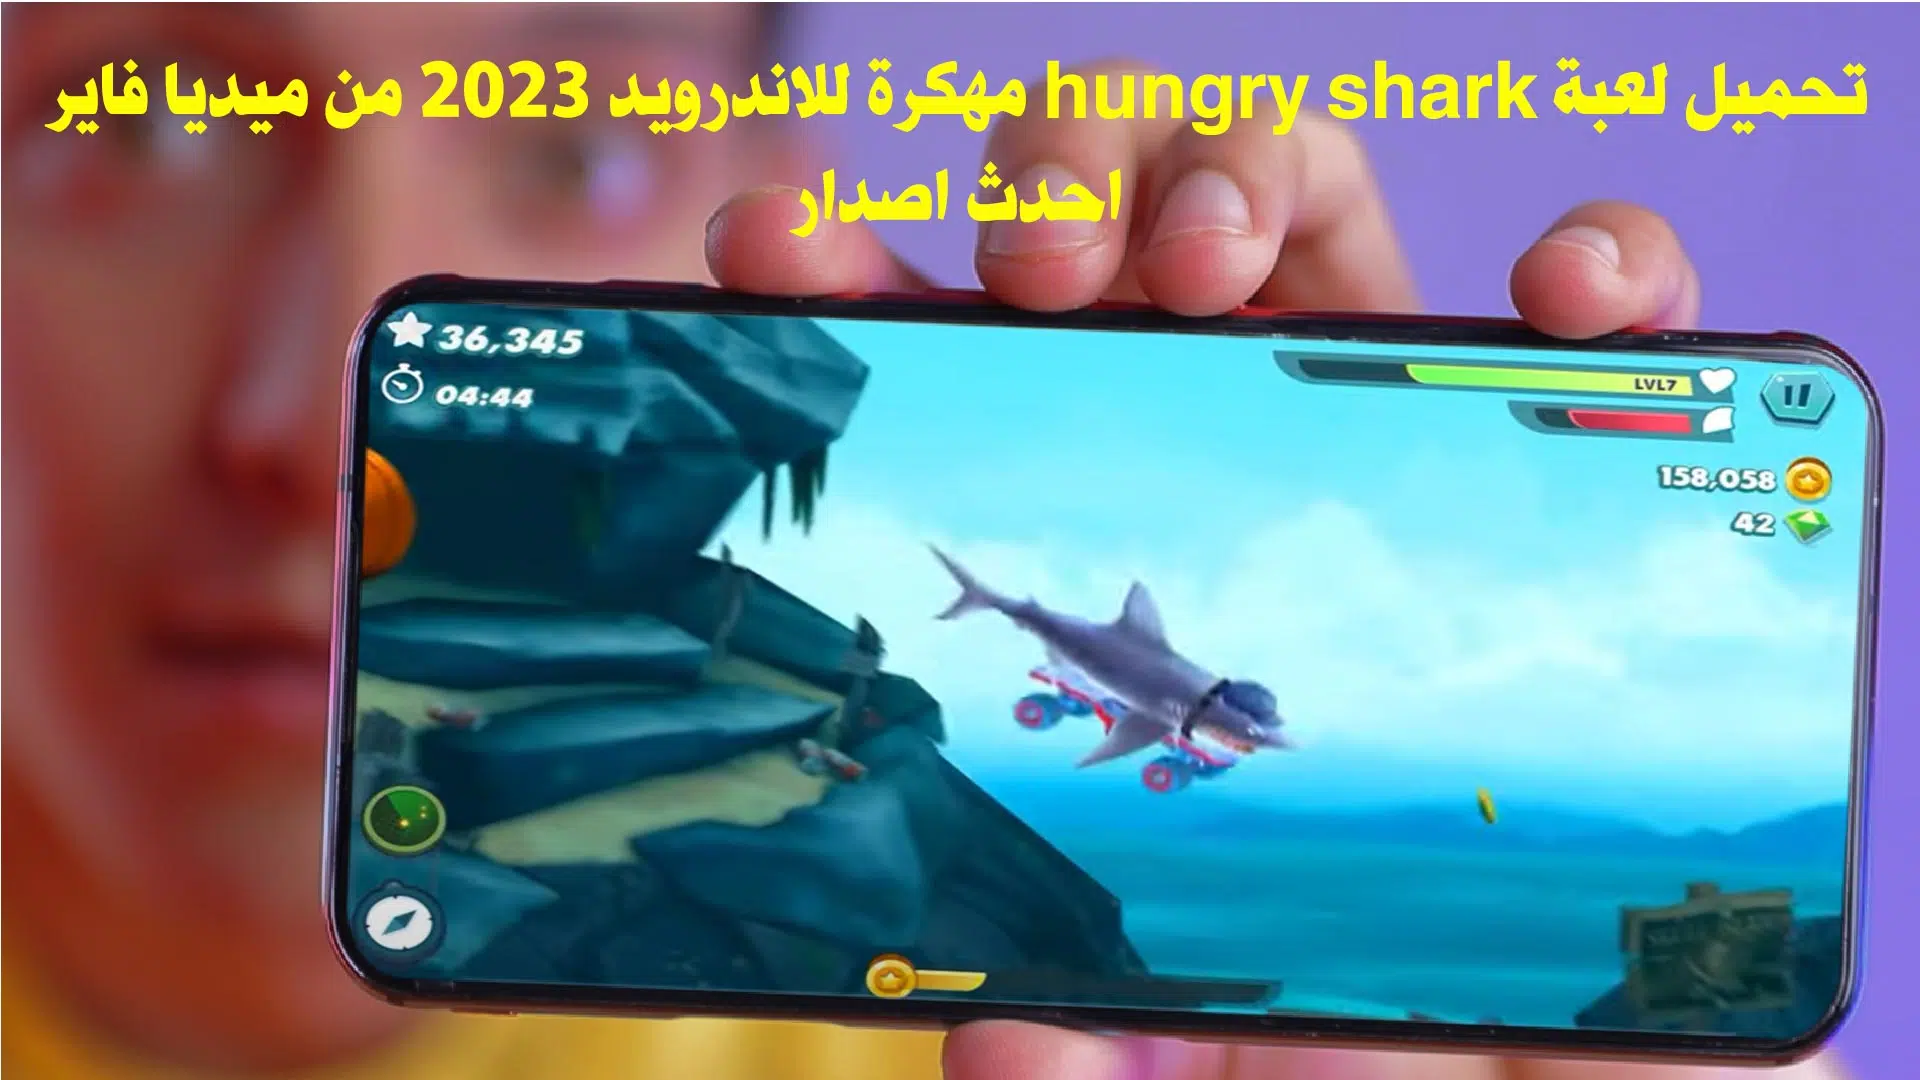 تحميل لعبة hungry shark مهكرة للاندرويد 2023 من ميديا فاير احدث اصدار